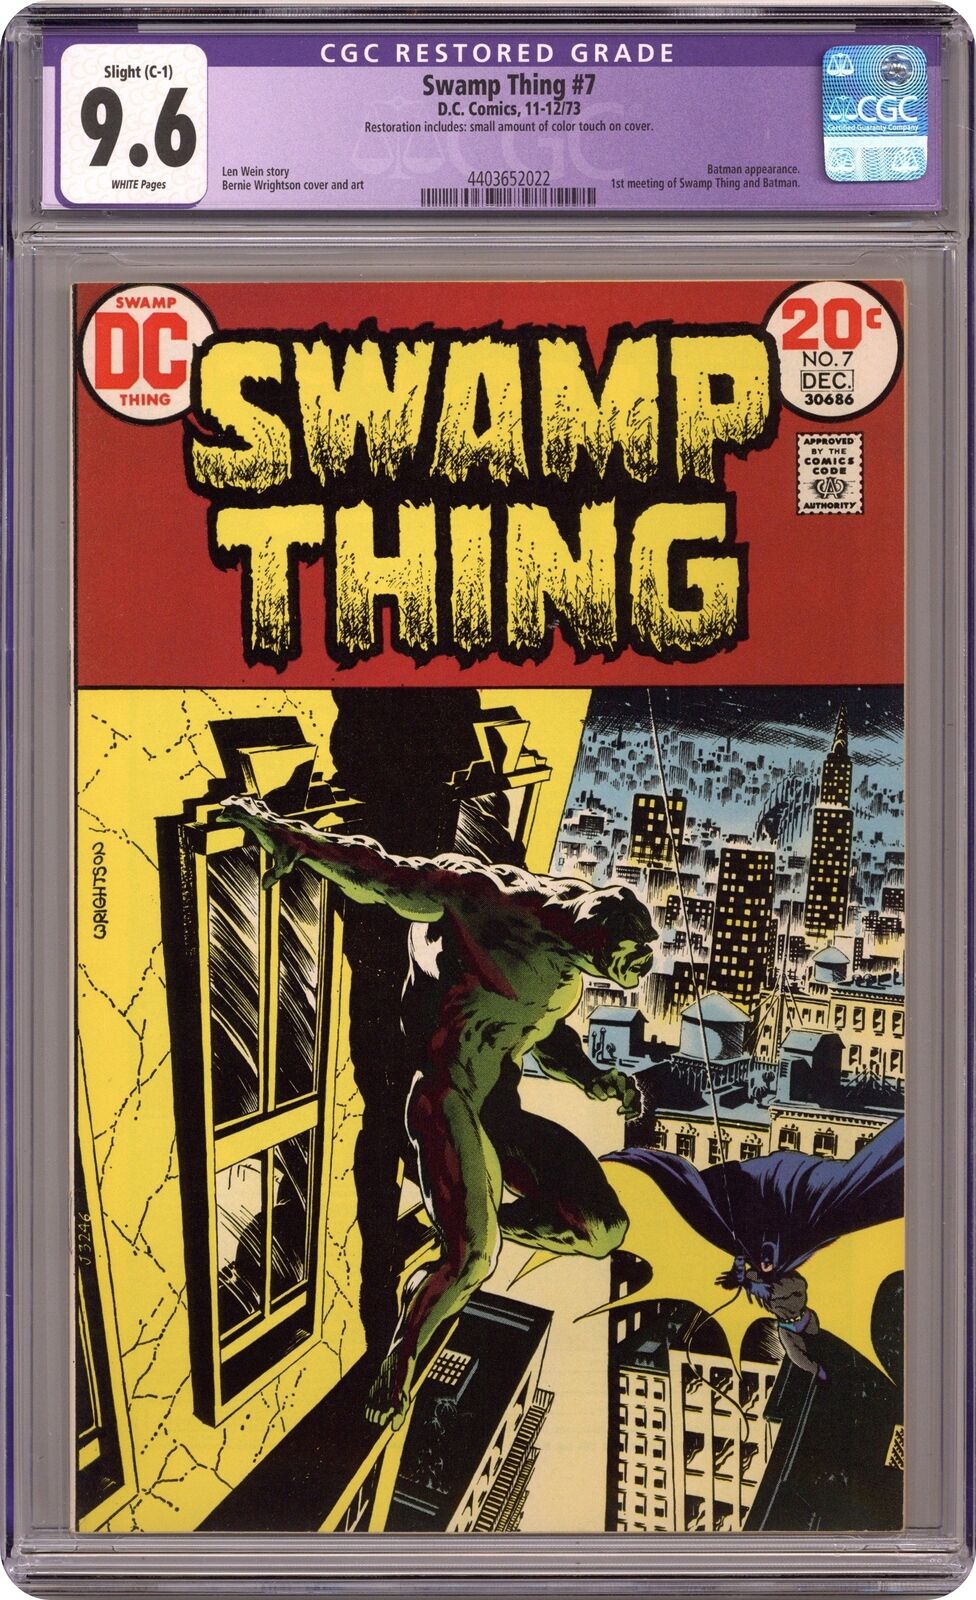 Swamp Thing #7 CGC 9.6 RESTORED 1973 4403652022